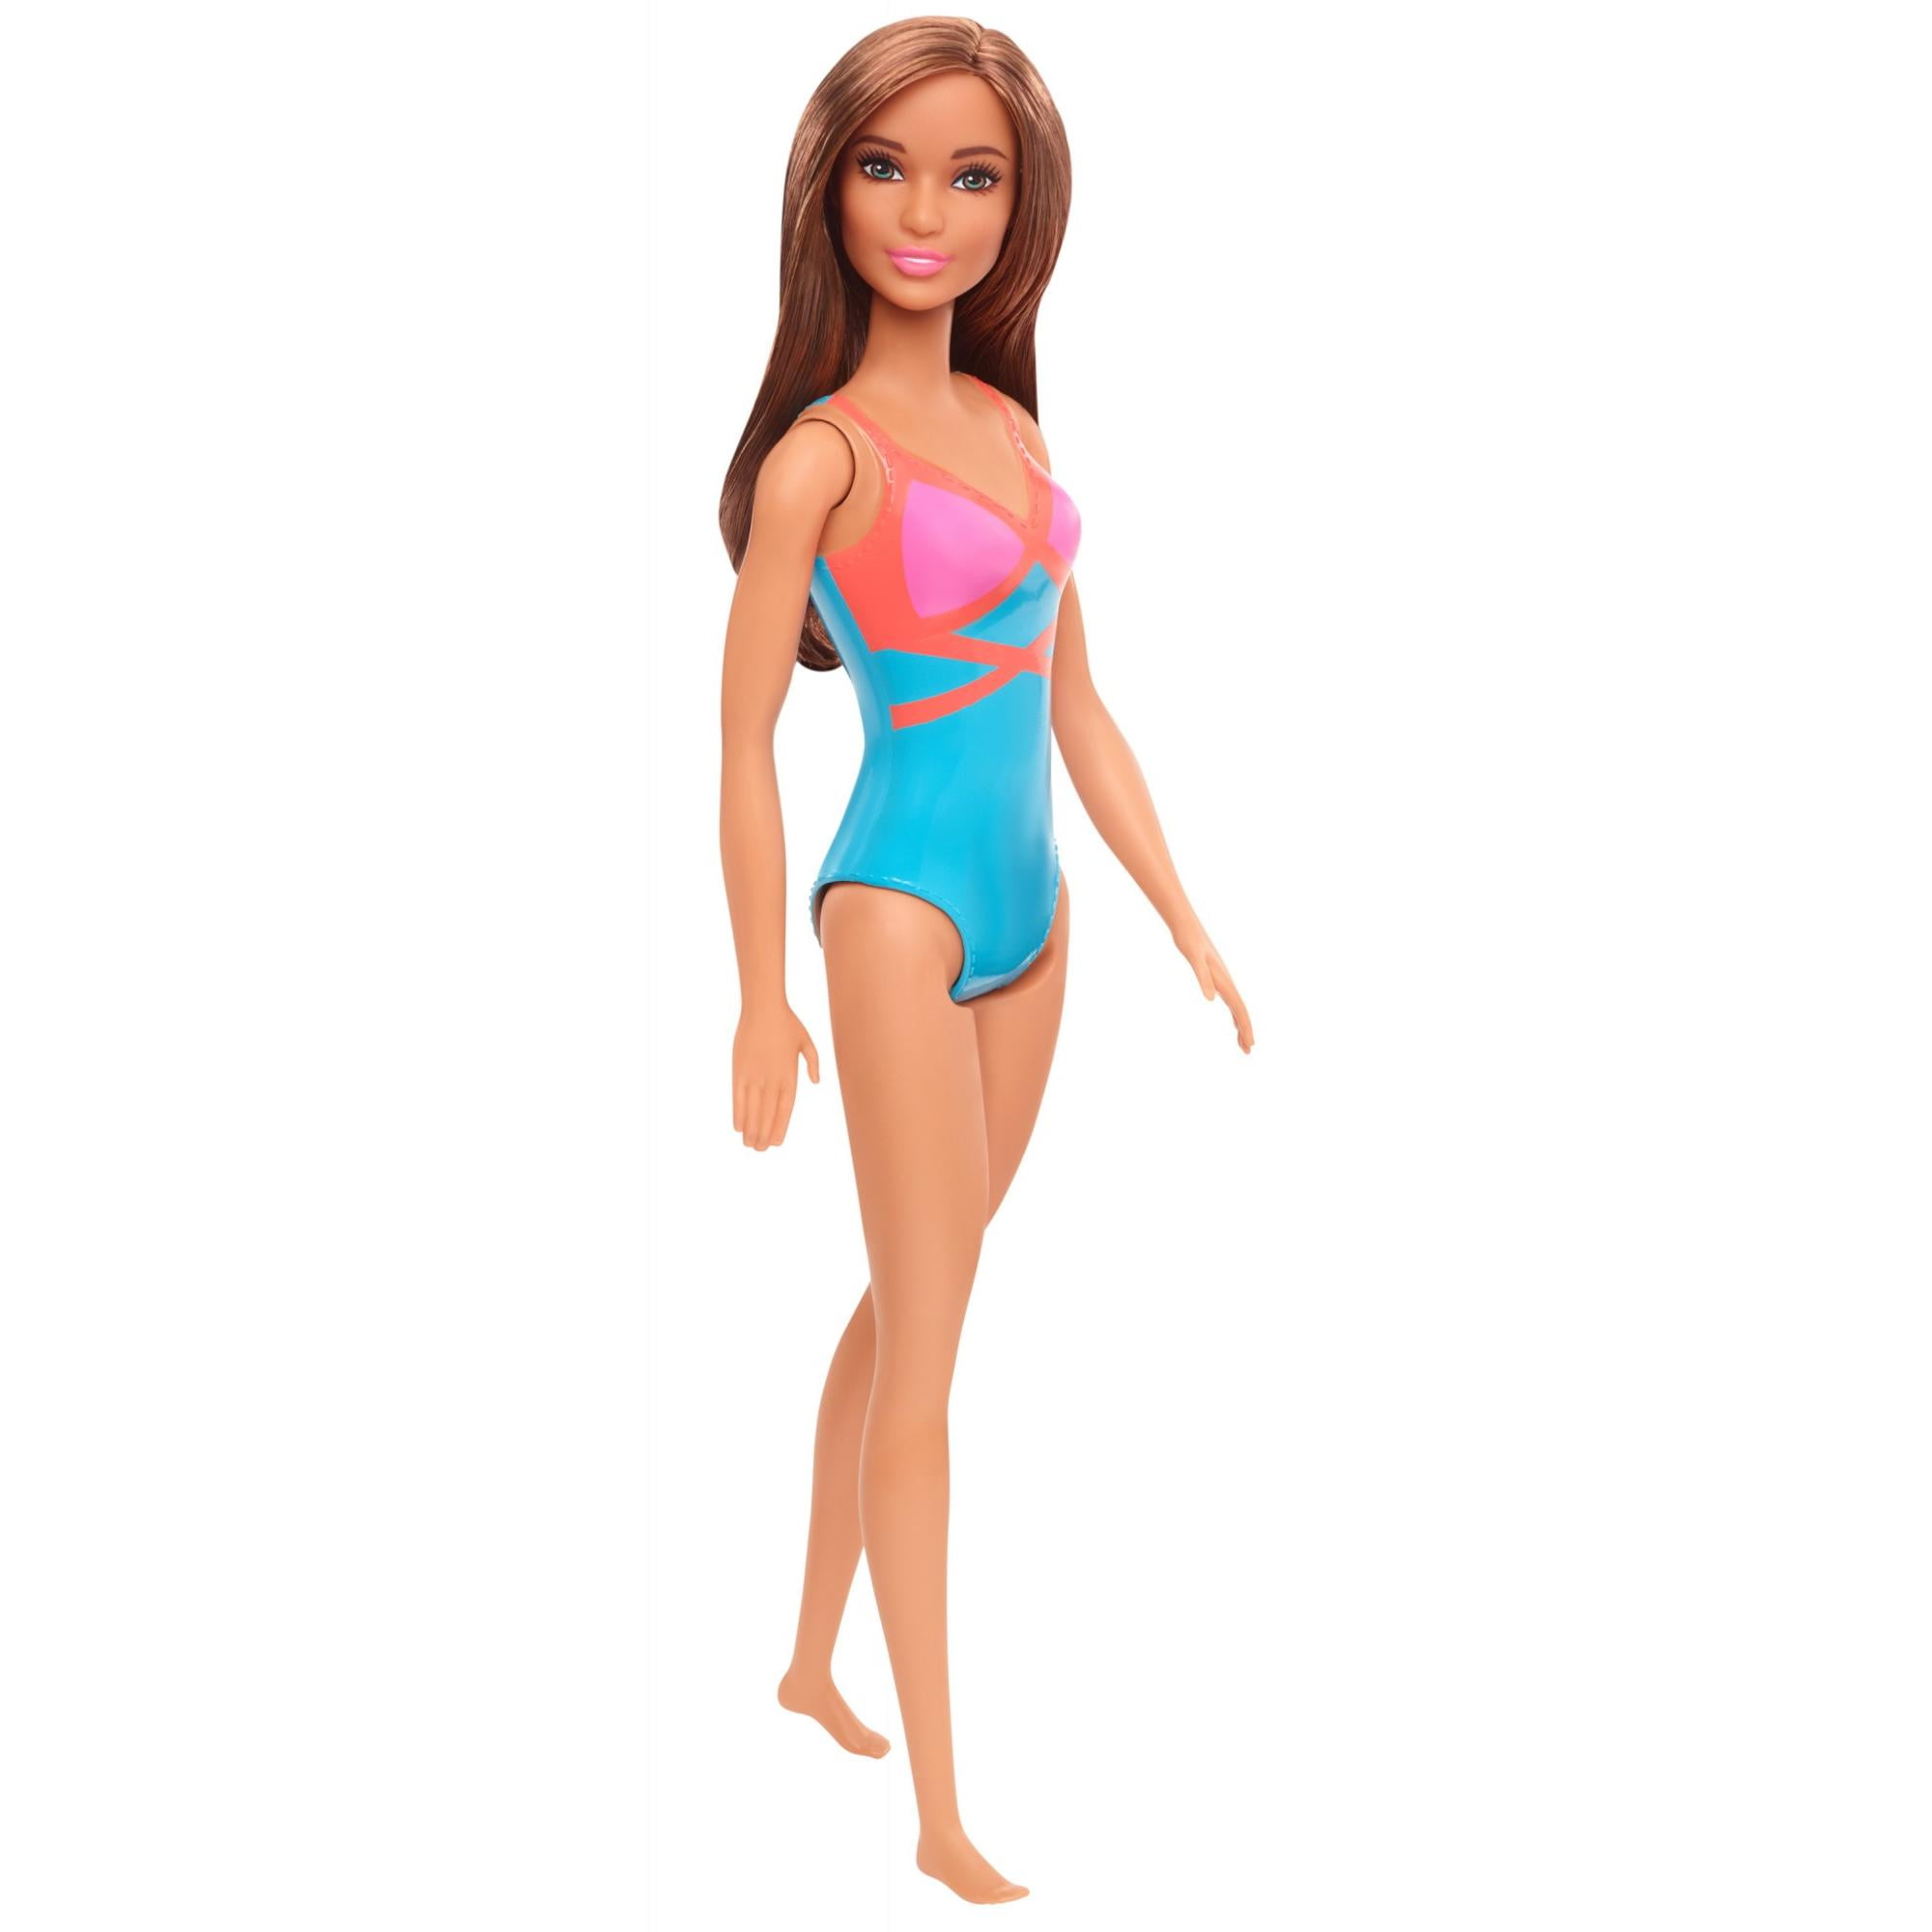 Buy boneca barbie, morena, vestindo maiô, para crianças 3 a 7 anos, morena  Online at Lowest Price in Ubuy Angola. 633507377